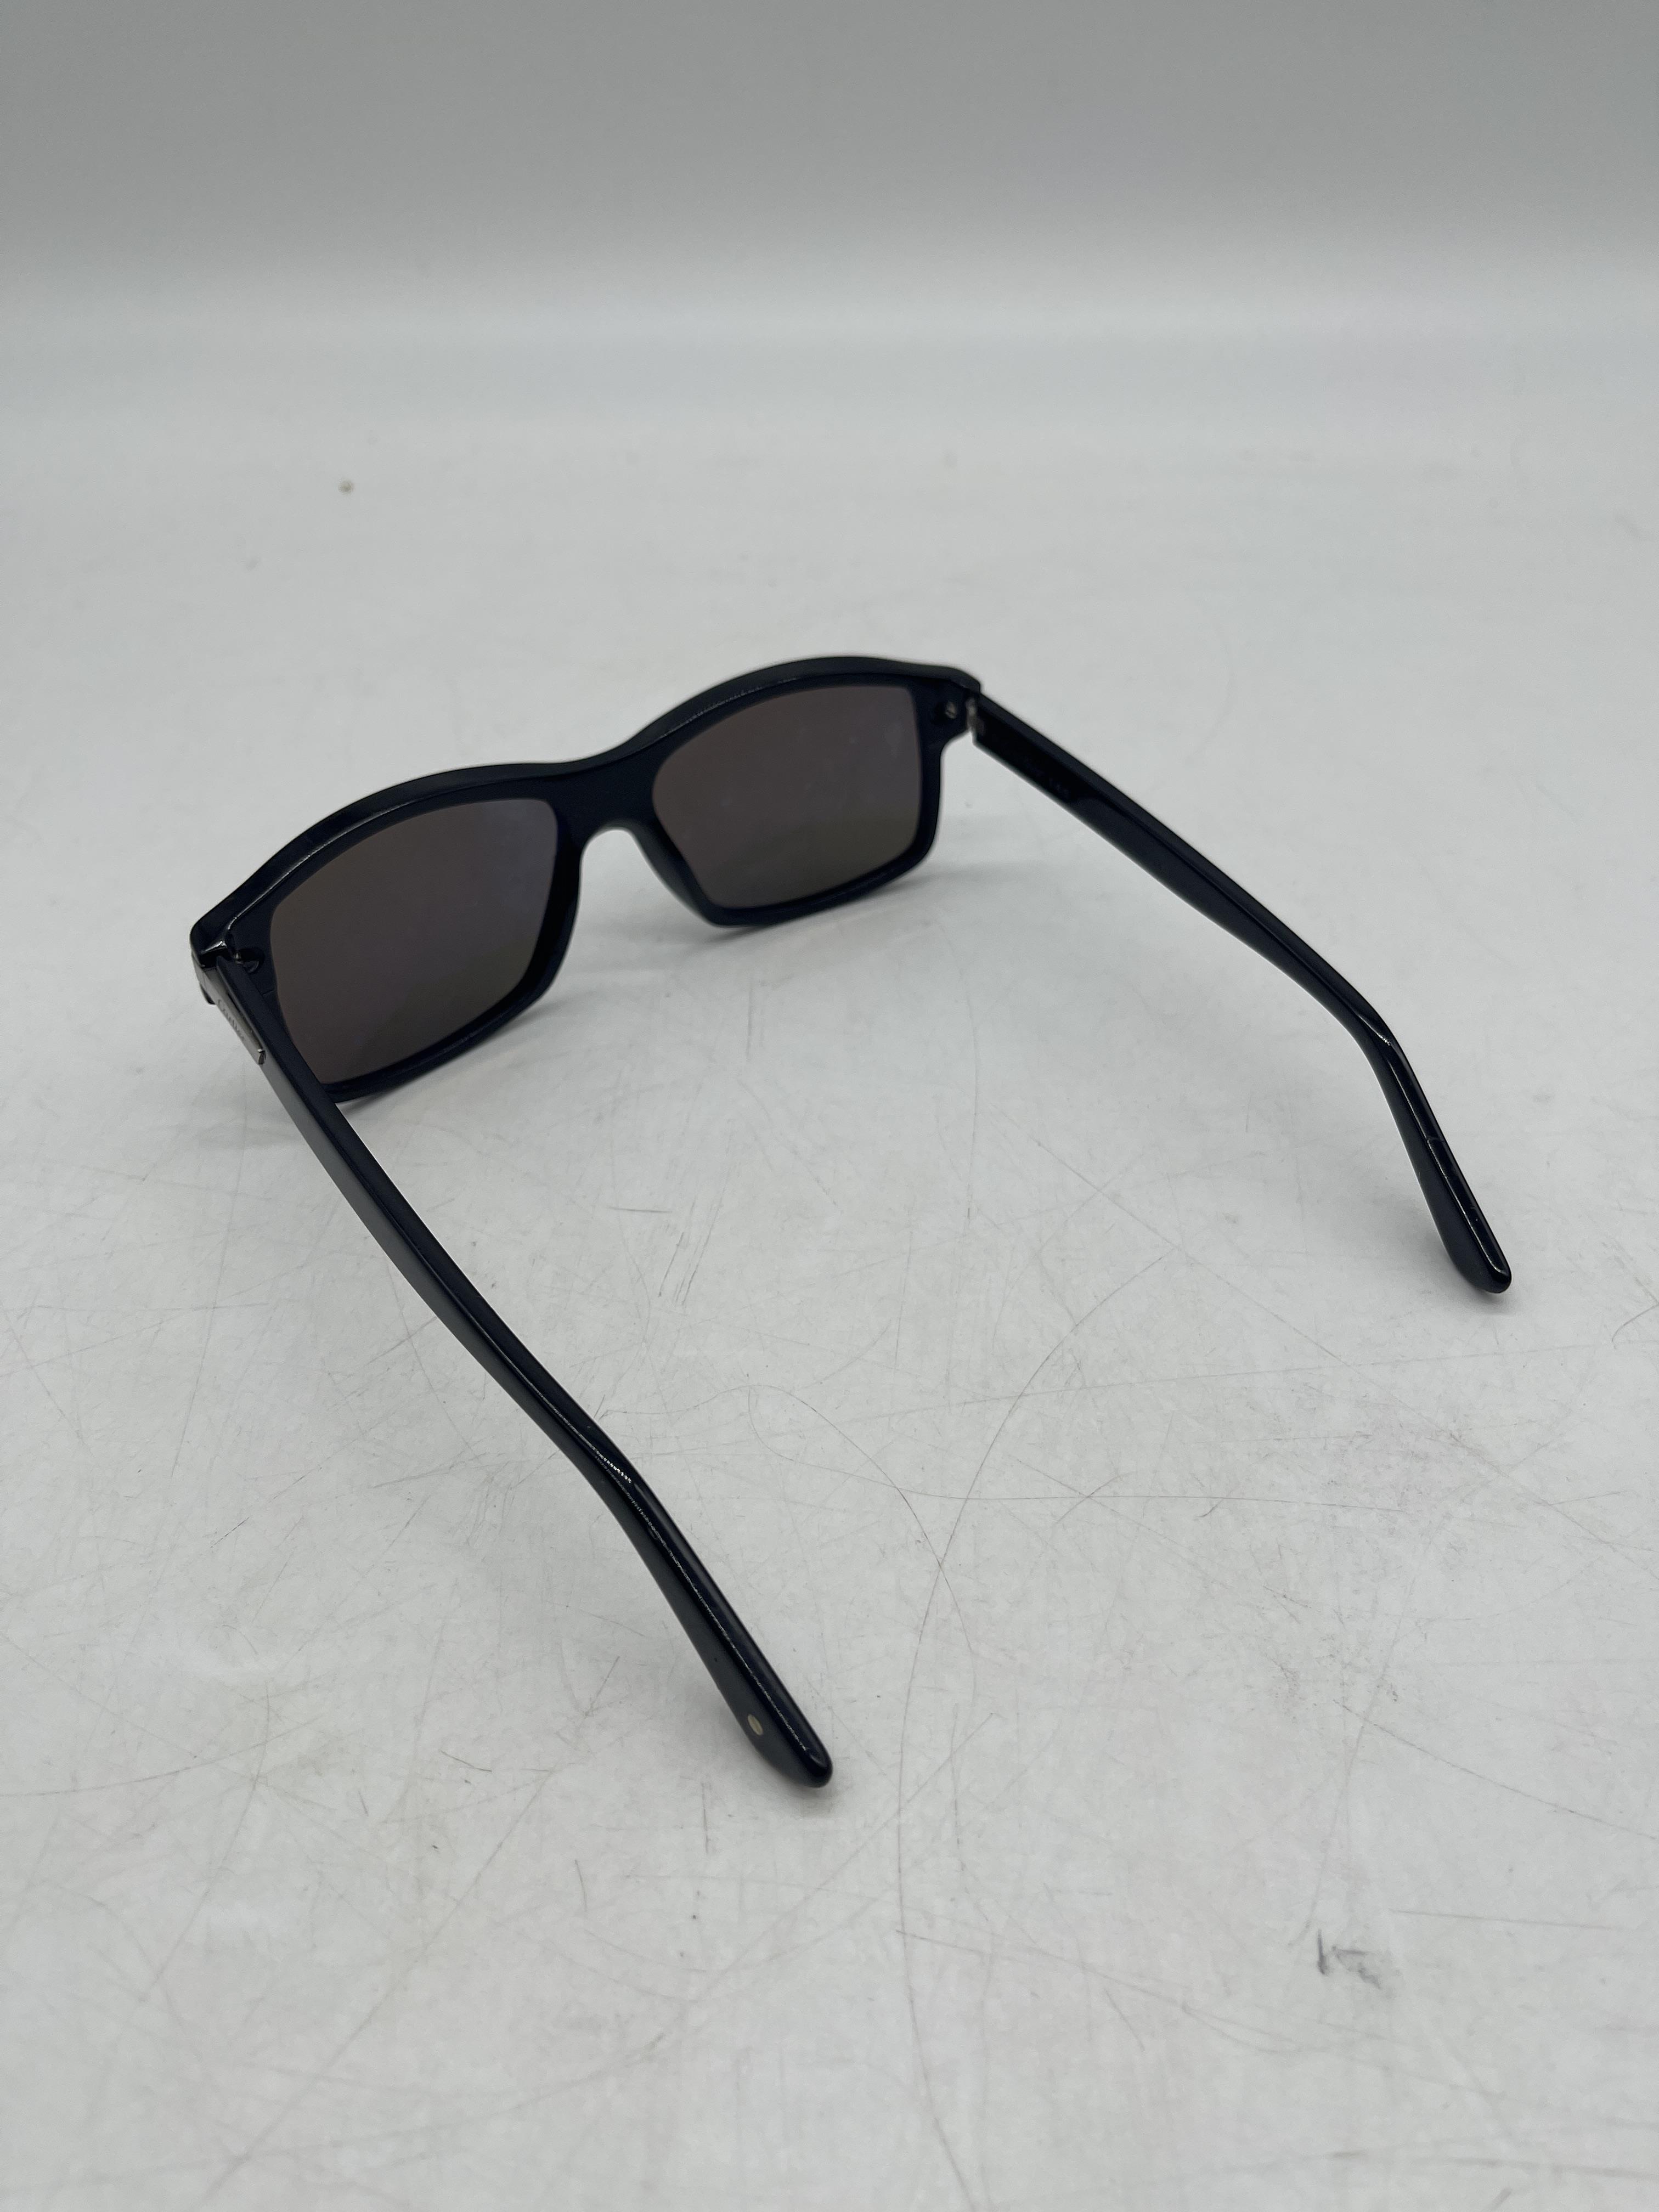 Cartier Santos De Cartier Square Tinted Sunglasses - Image 6 of 14